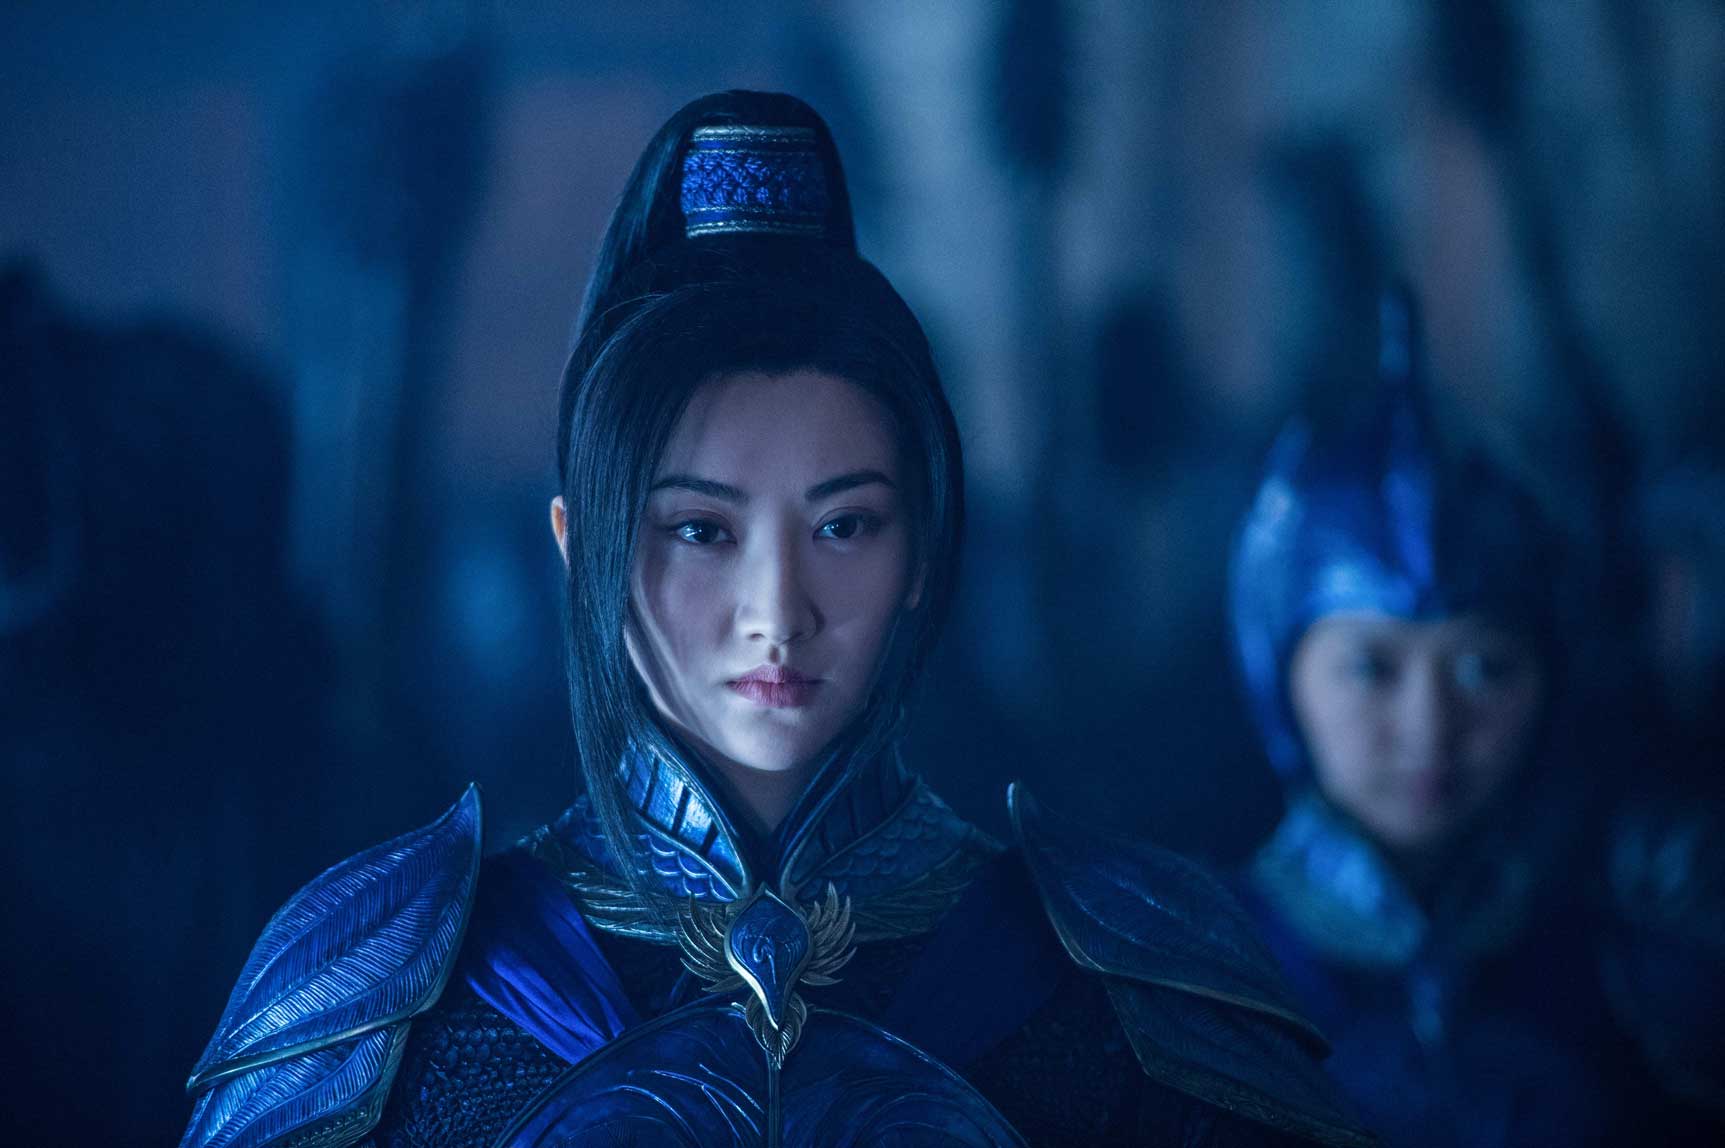 在 2016 年 12 月，有兩部很矚目及惹人談論的中國電影出現，先是張藝謀的《長城》，然後是張嘉佳（王家衛背後發功）的《擺渡人》。